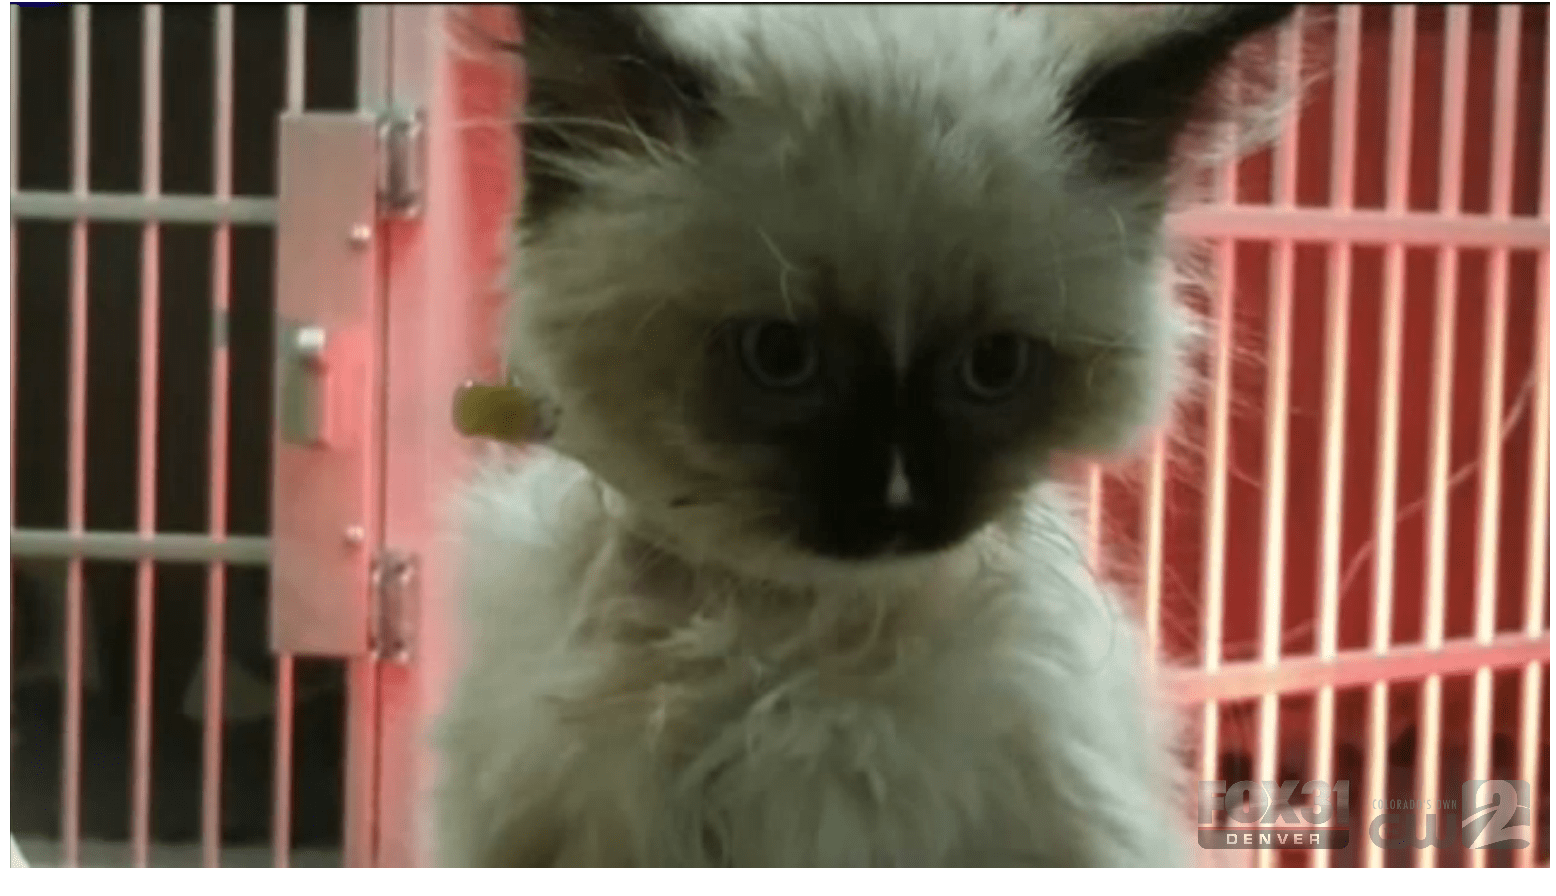 Kittens For Sale Near Me Craigslist - petfinder